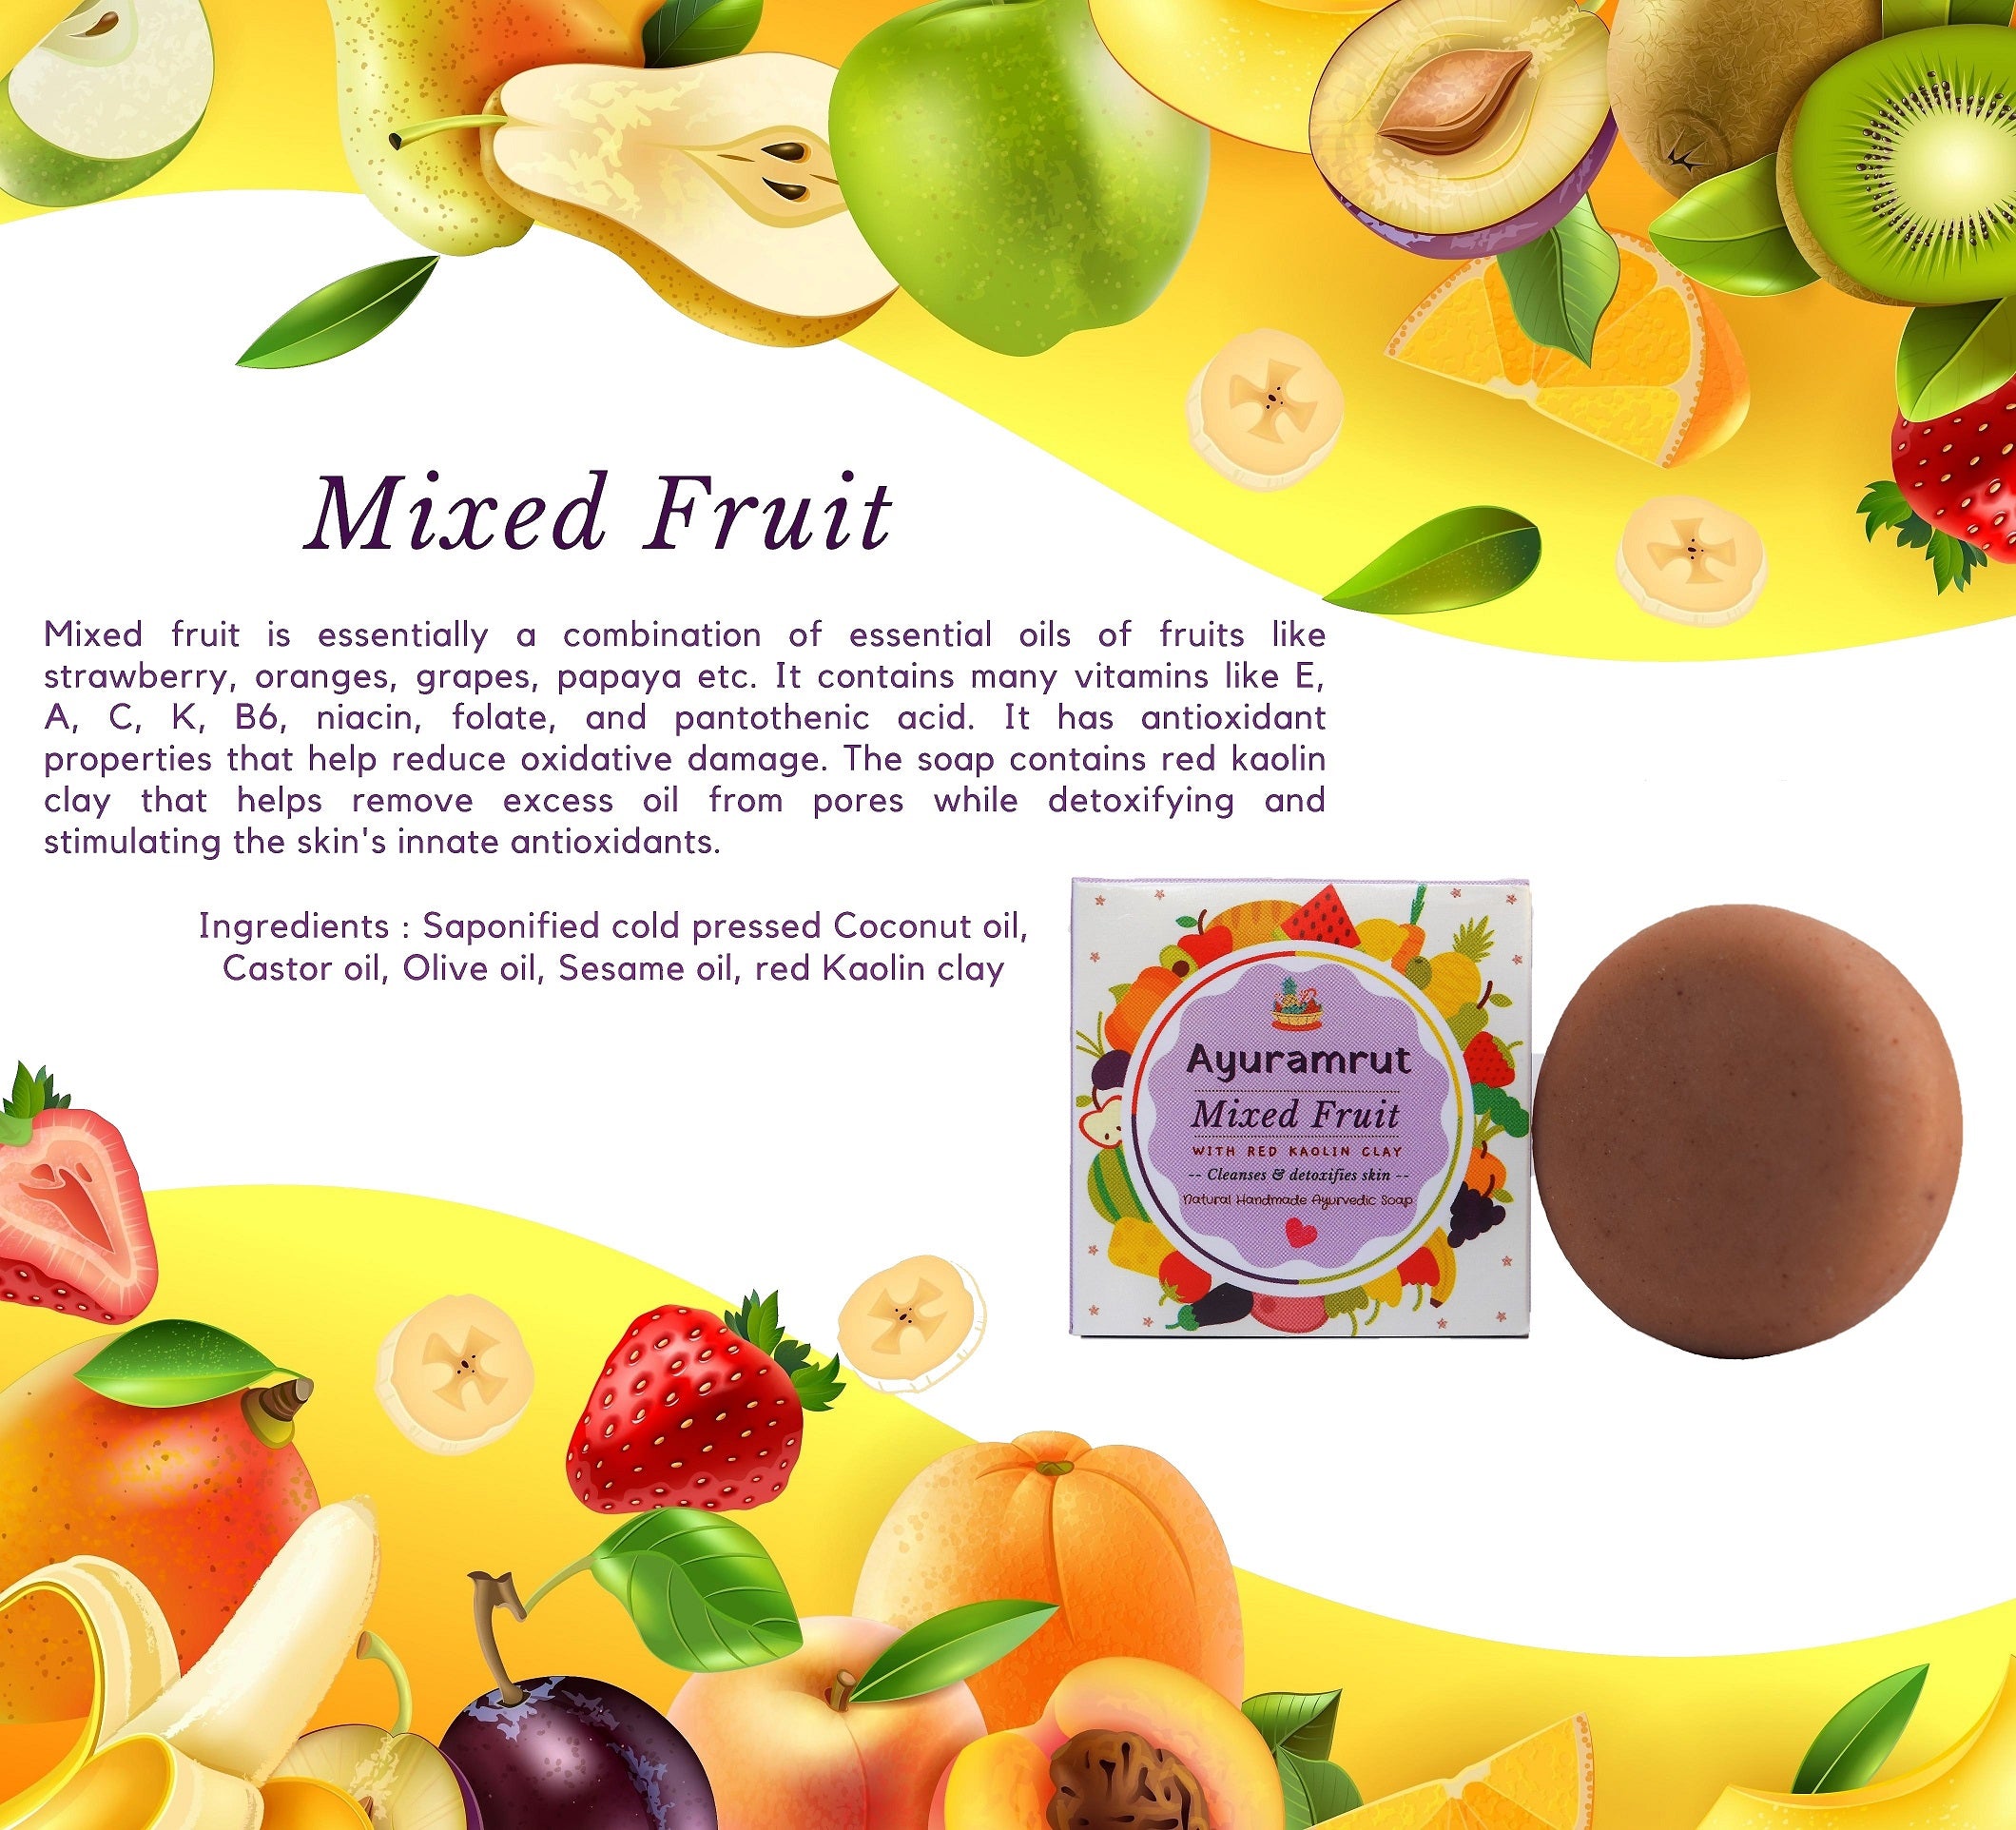 Ayuramrut Mixed Fruit Natural Handmade Ayurvedic Soap (Pack of 4)